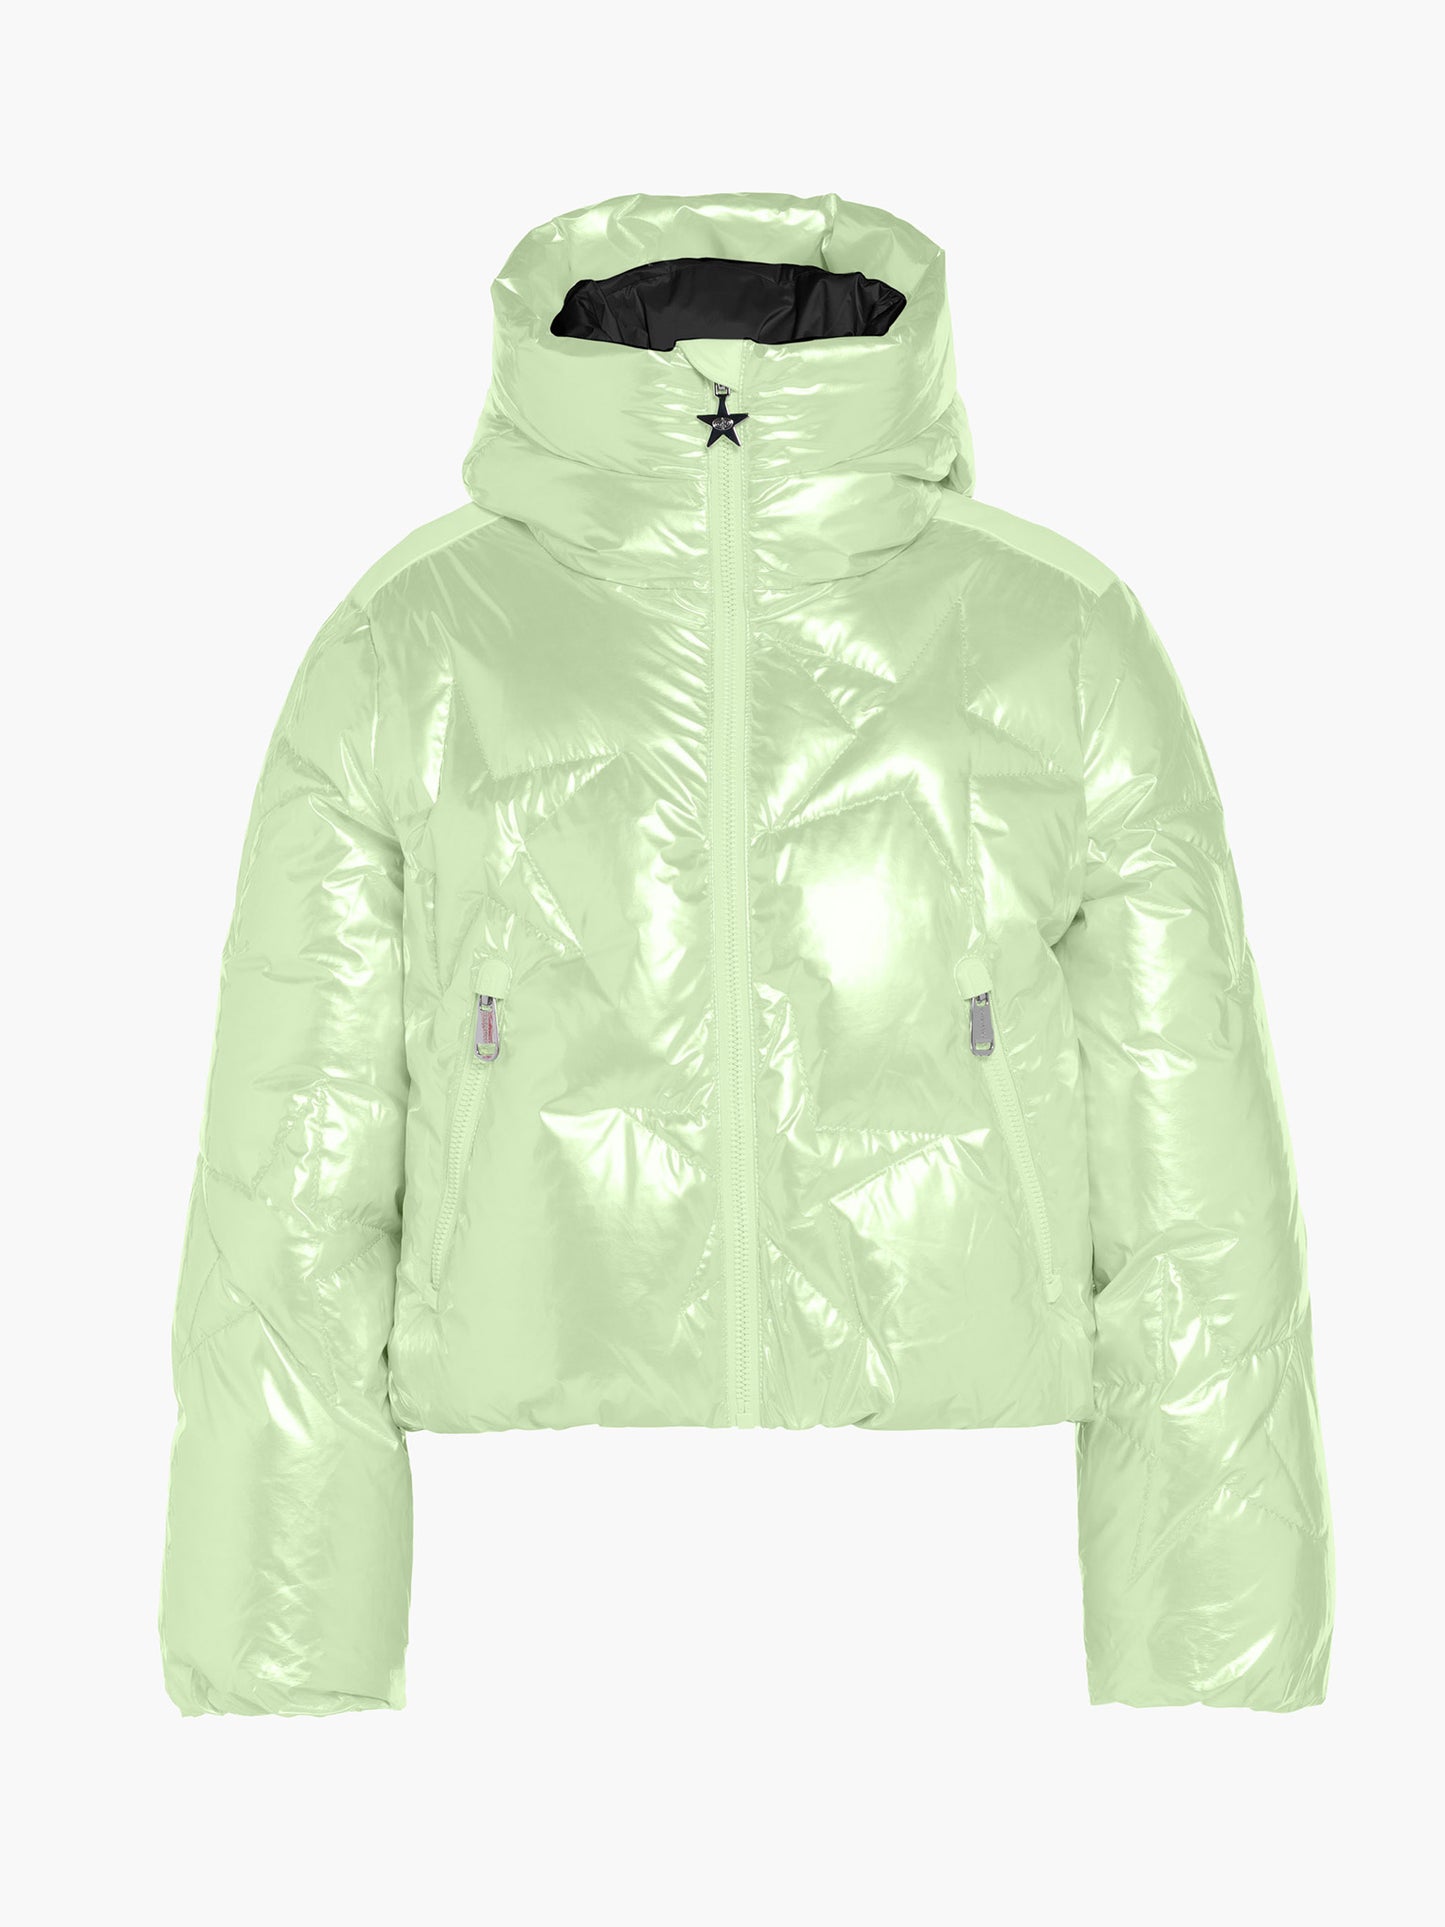 GLAMSTAR ski jacket